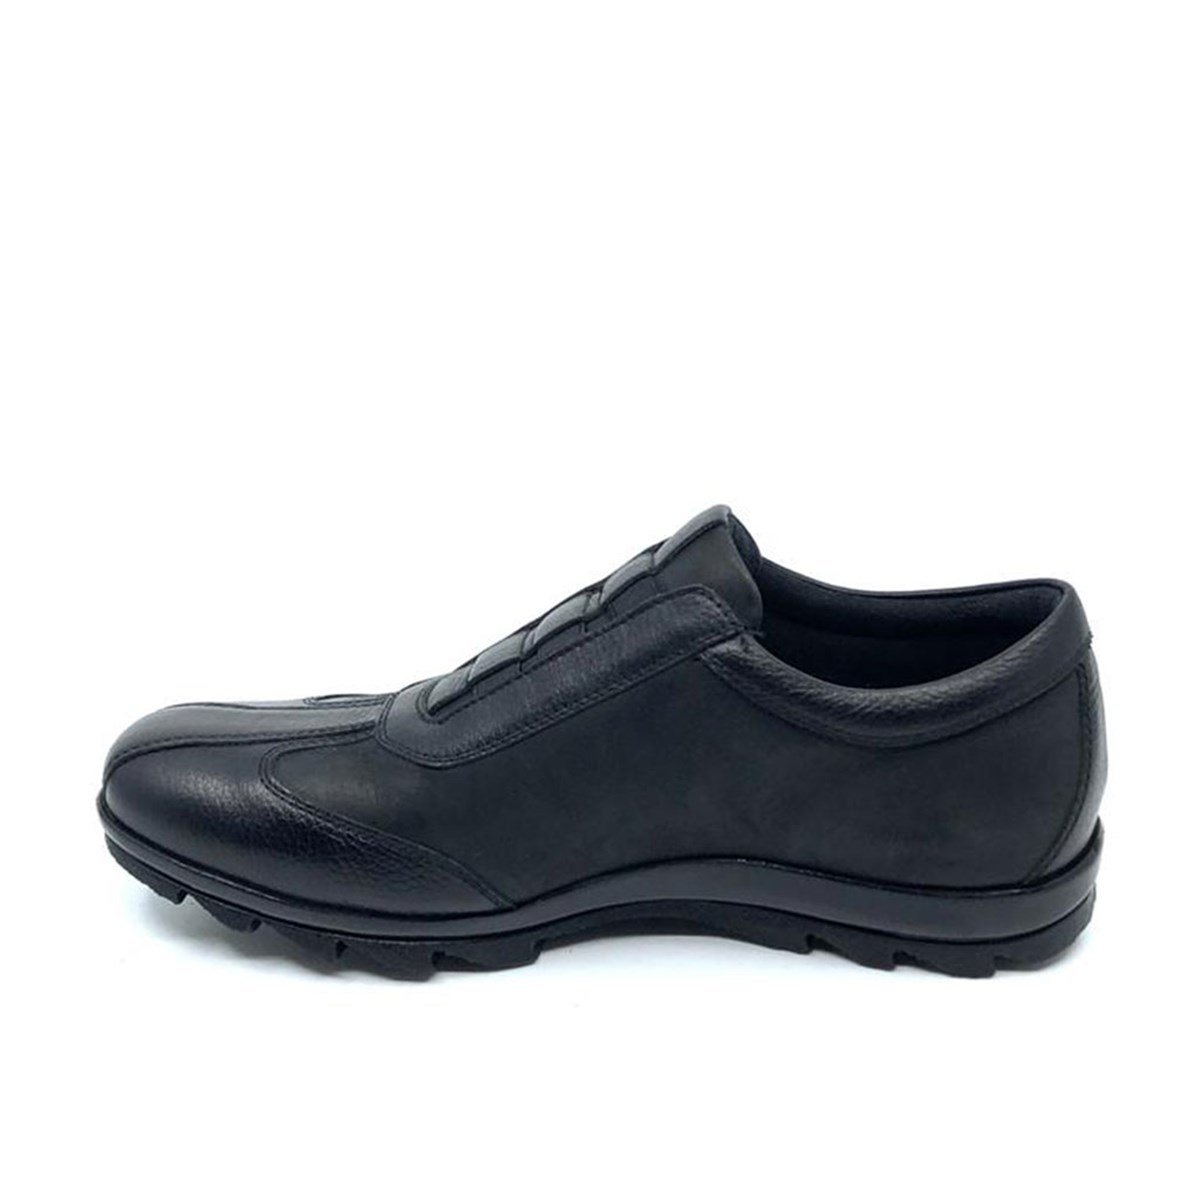 Siyah Casual Kışlık Erkek Ayakkabı 9534 551 635 - Fosco